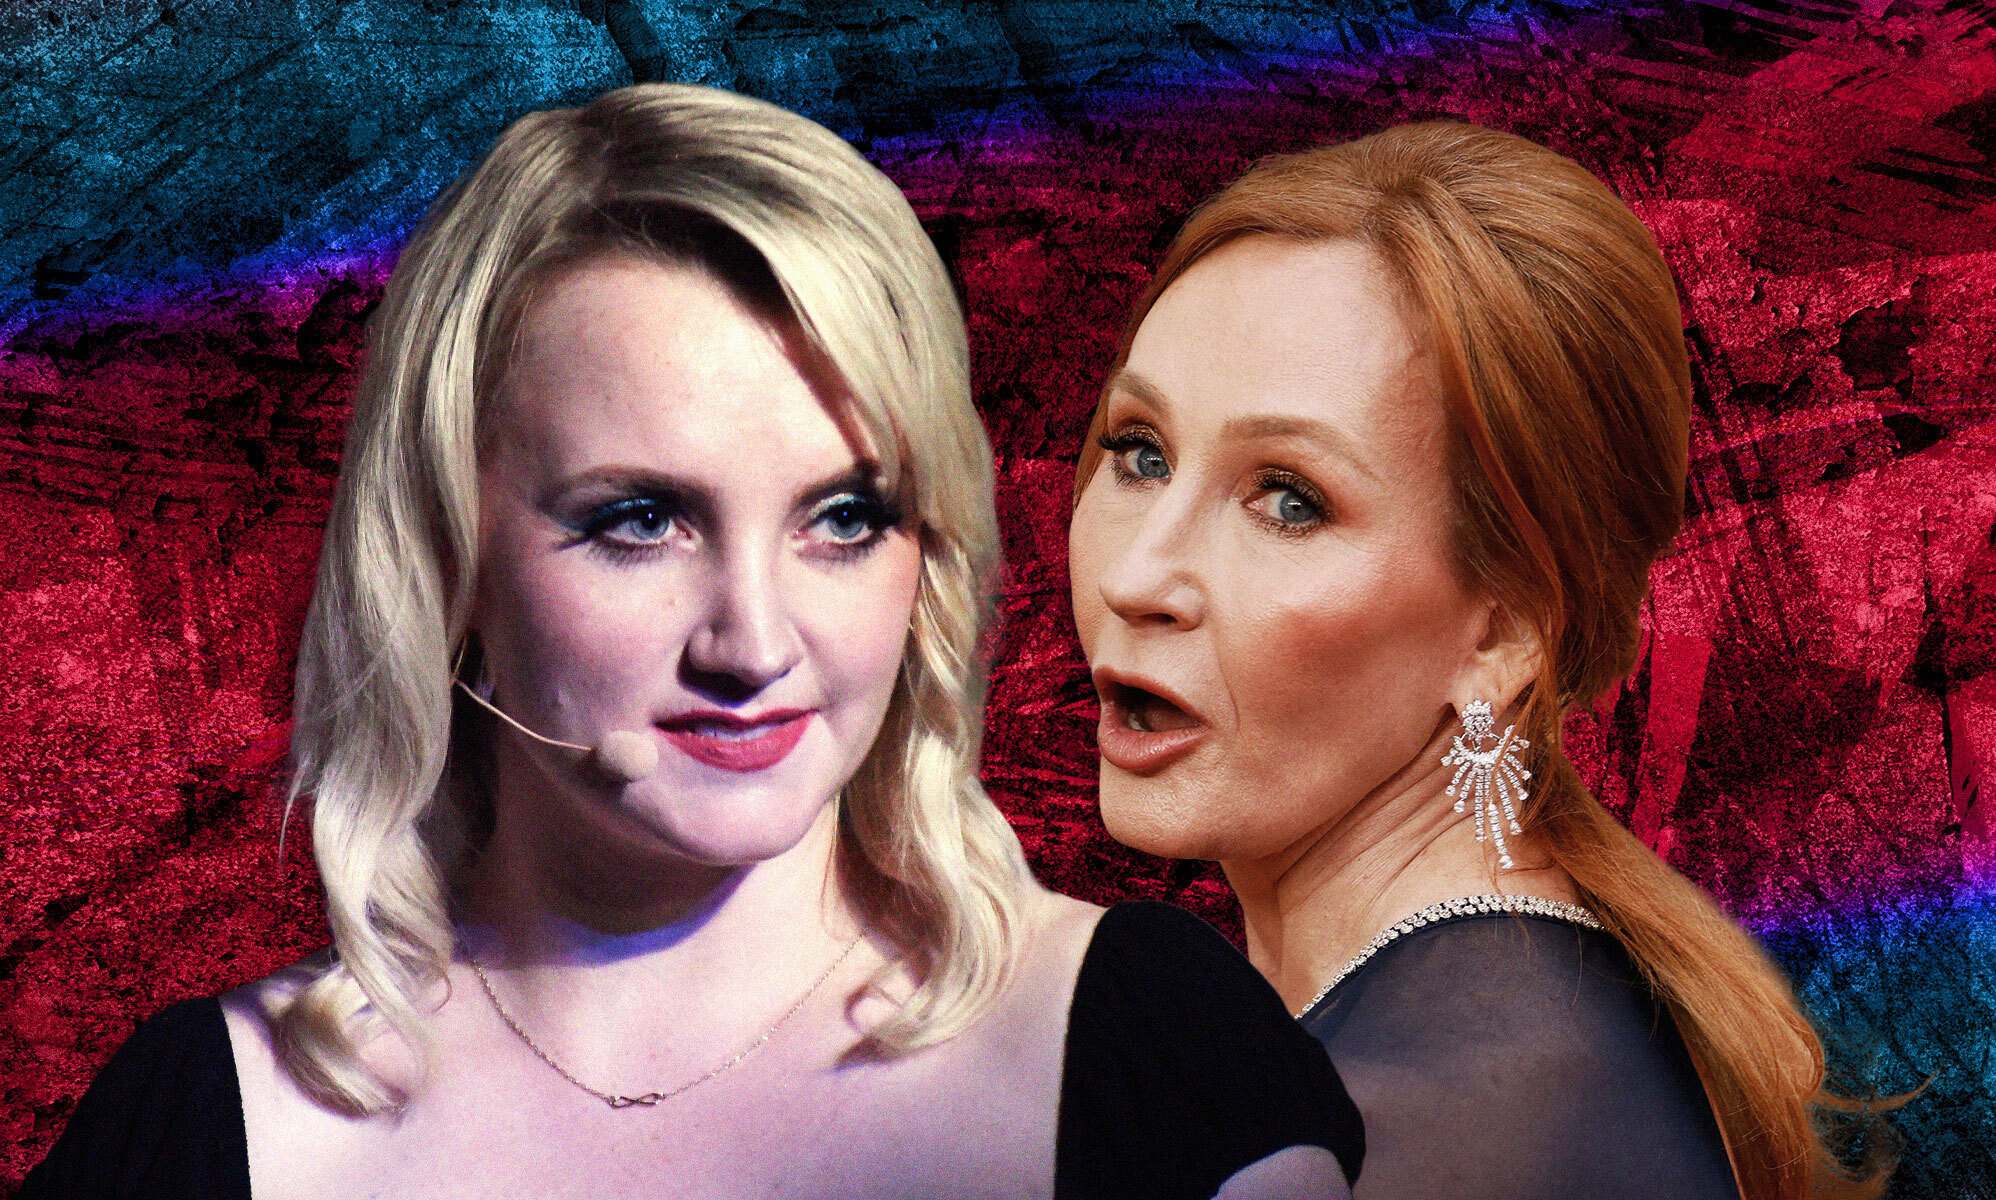 La actriz Evanna Lynch defiende a JK Rowling por dar voz a los detractores